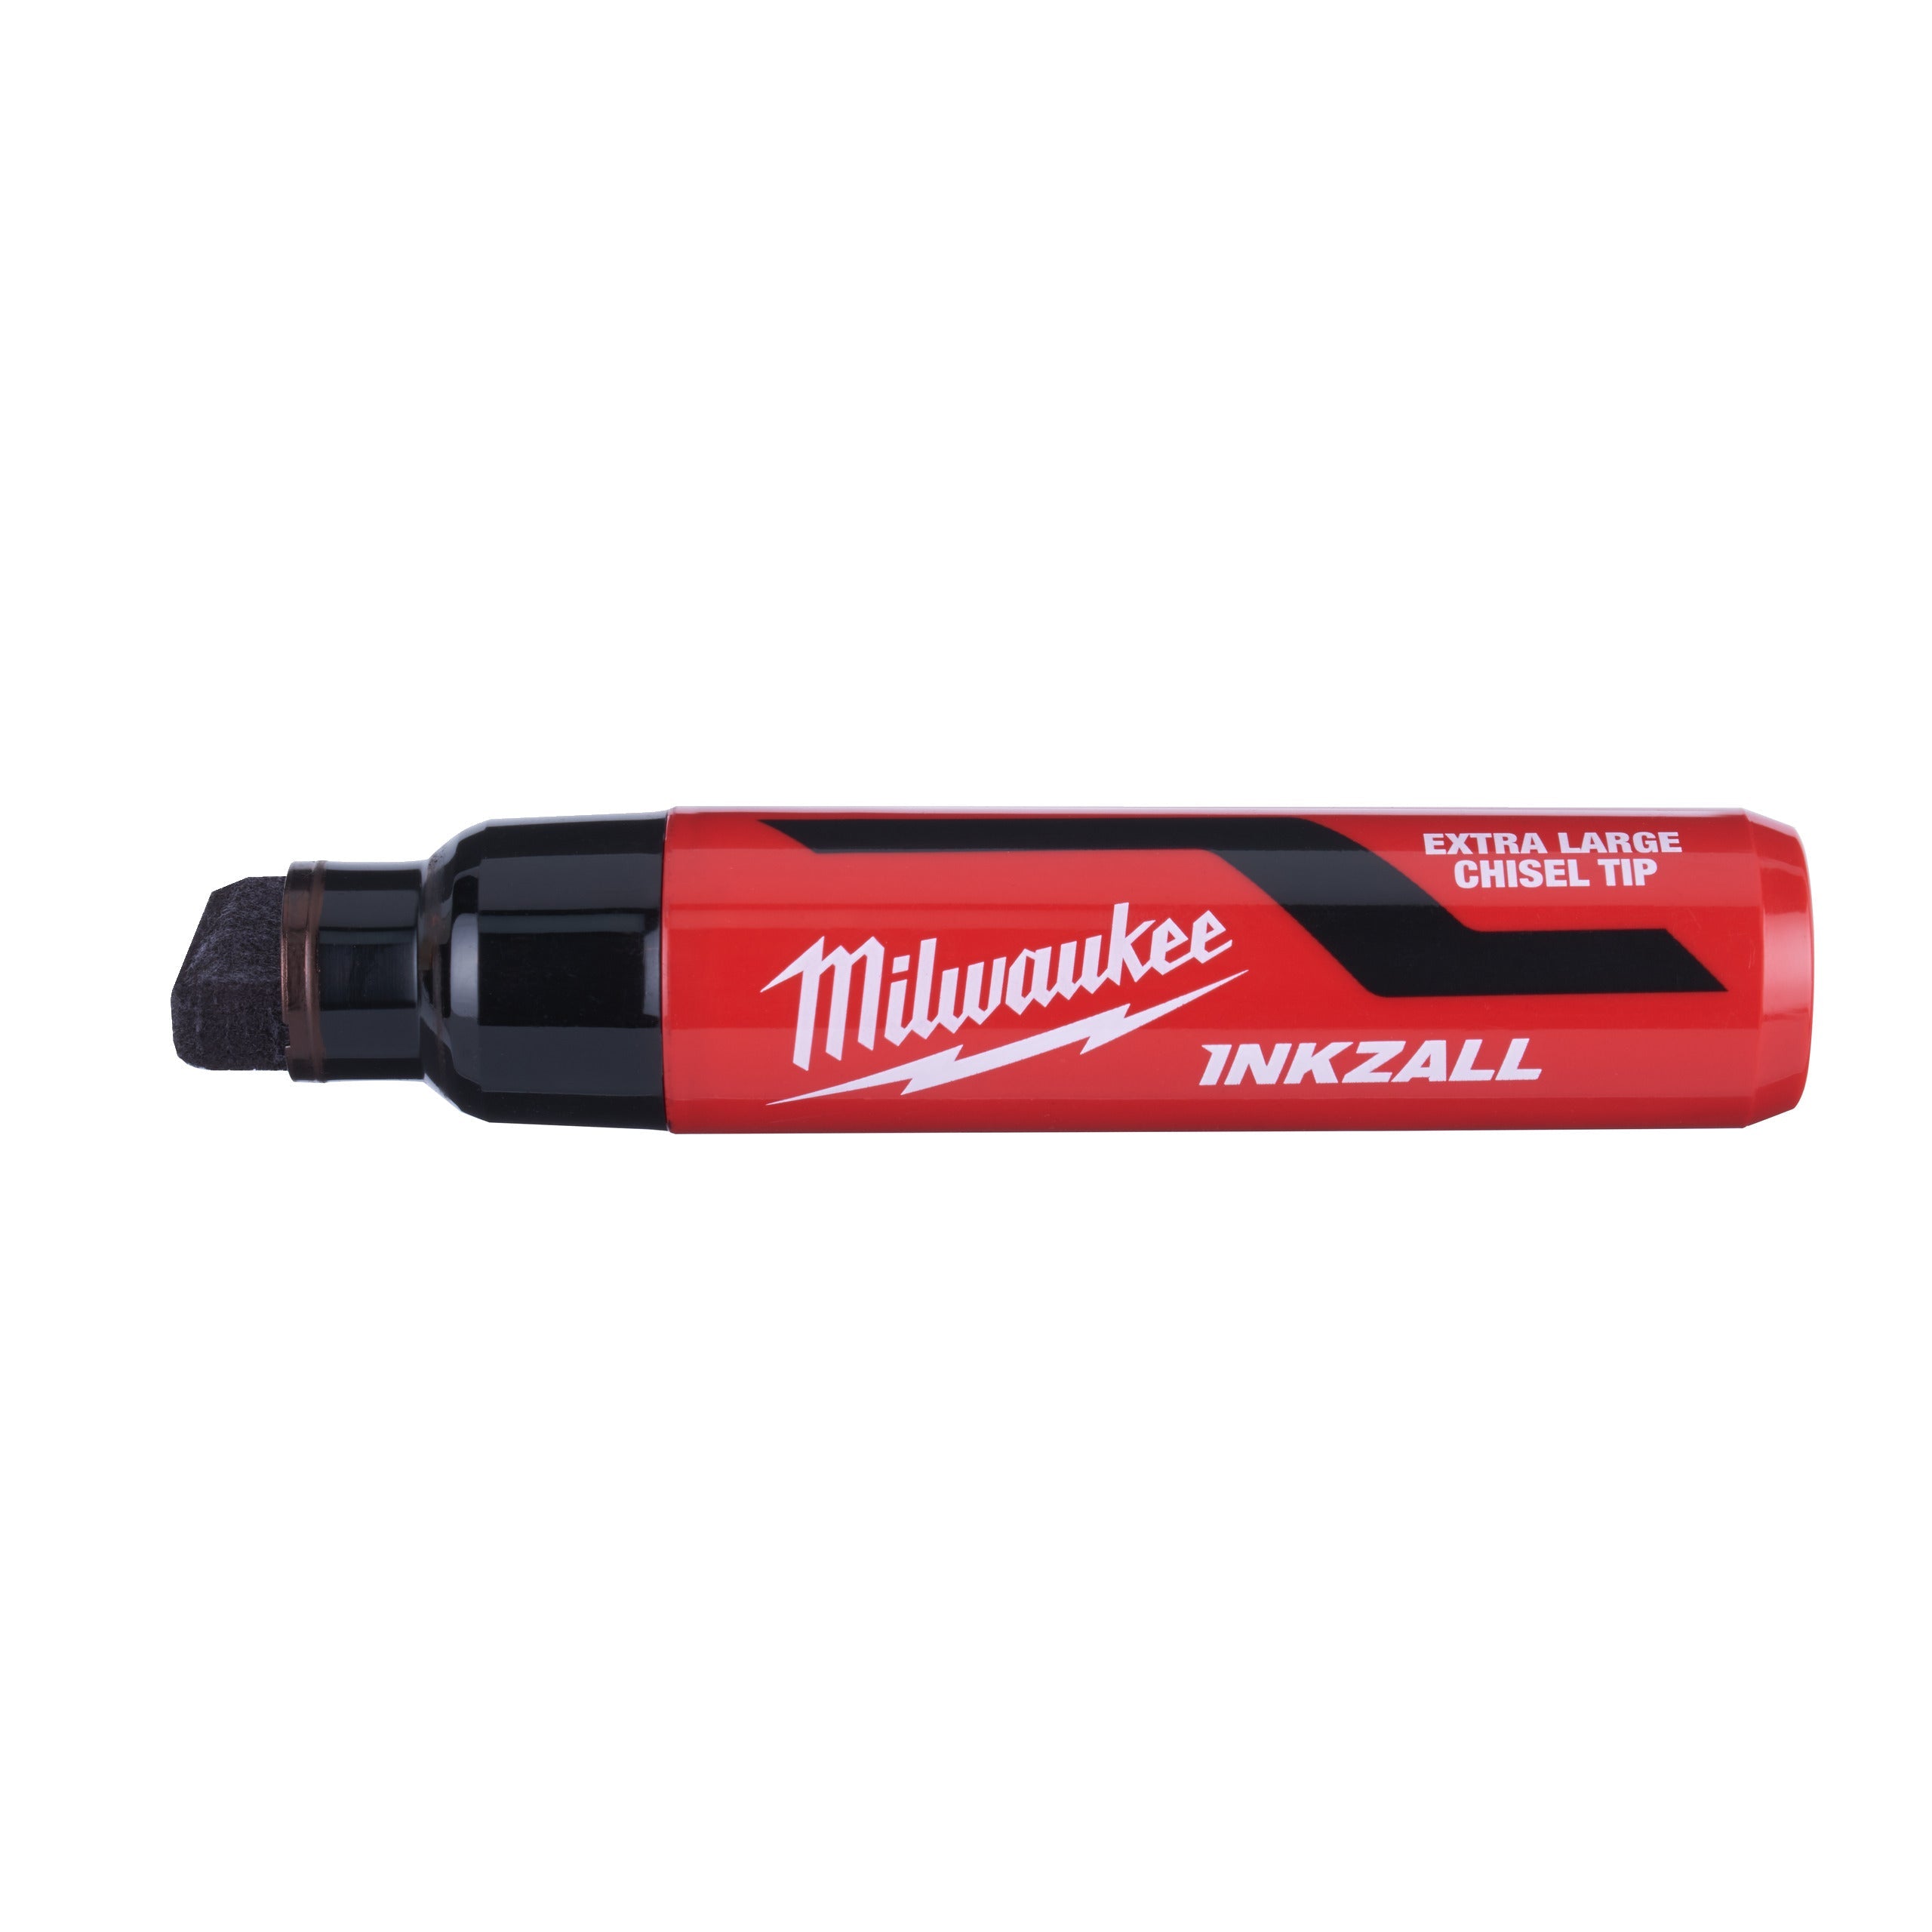 Marker INKZALL™ cu vârf lat negru, XL, Milwaukee cod 4932471559